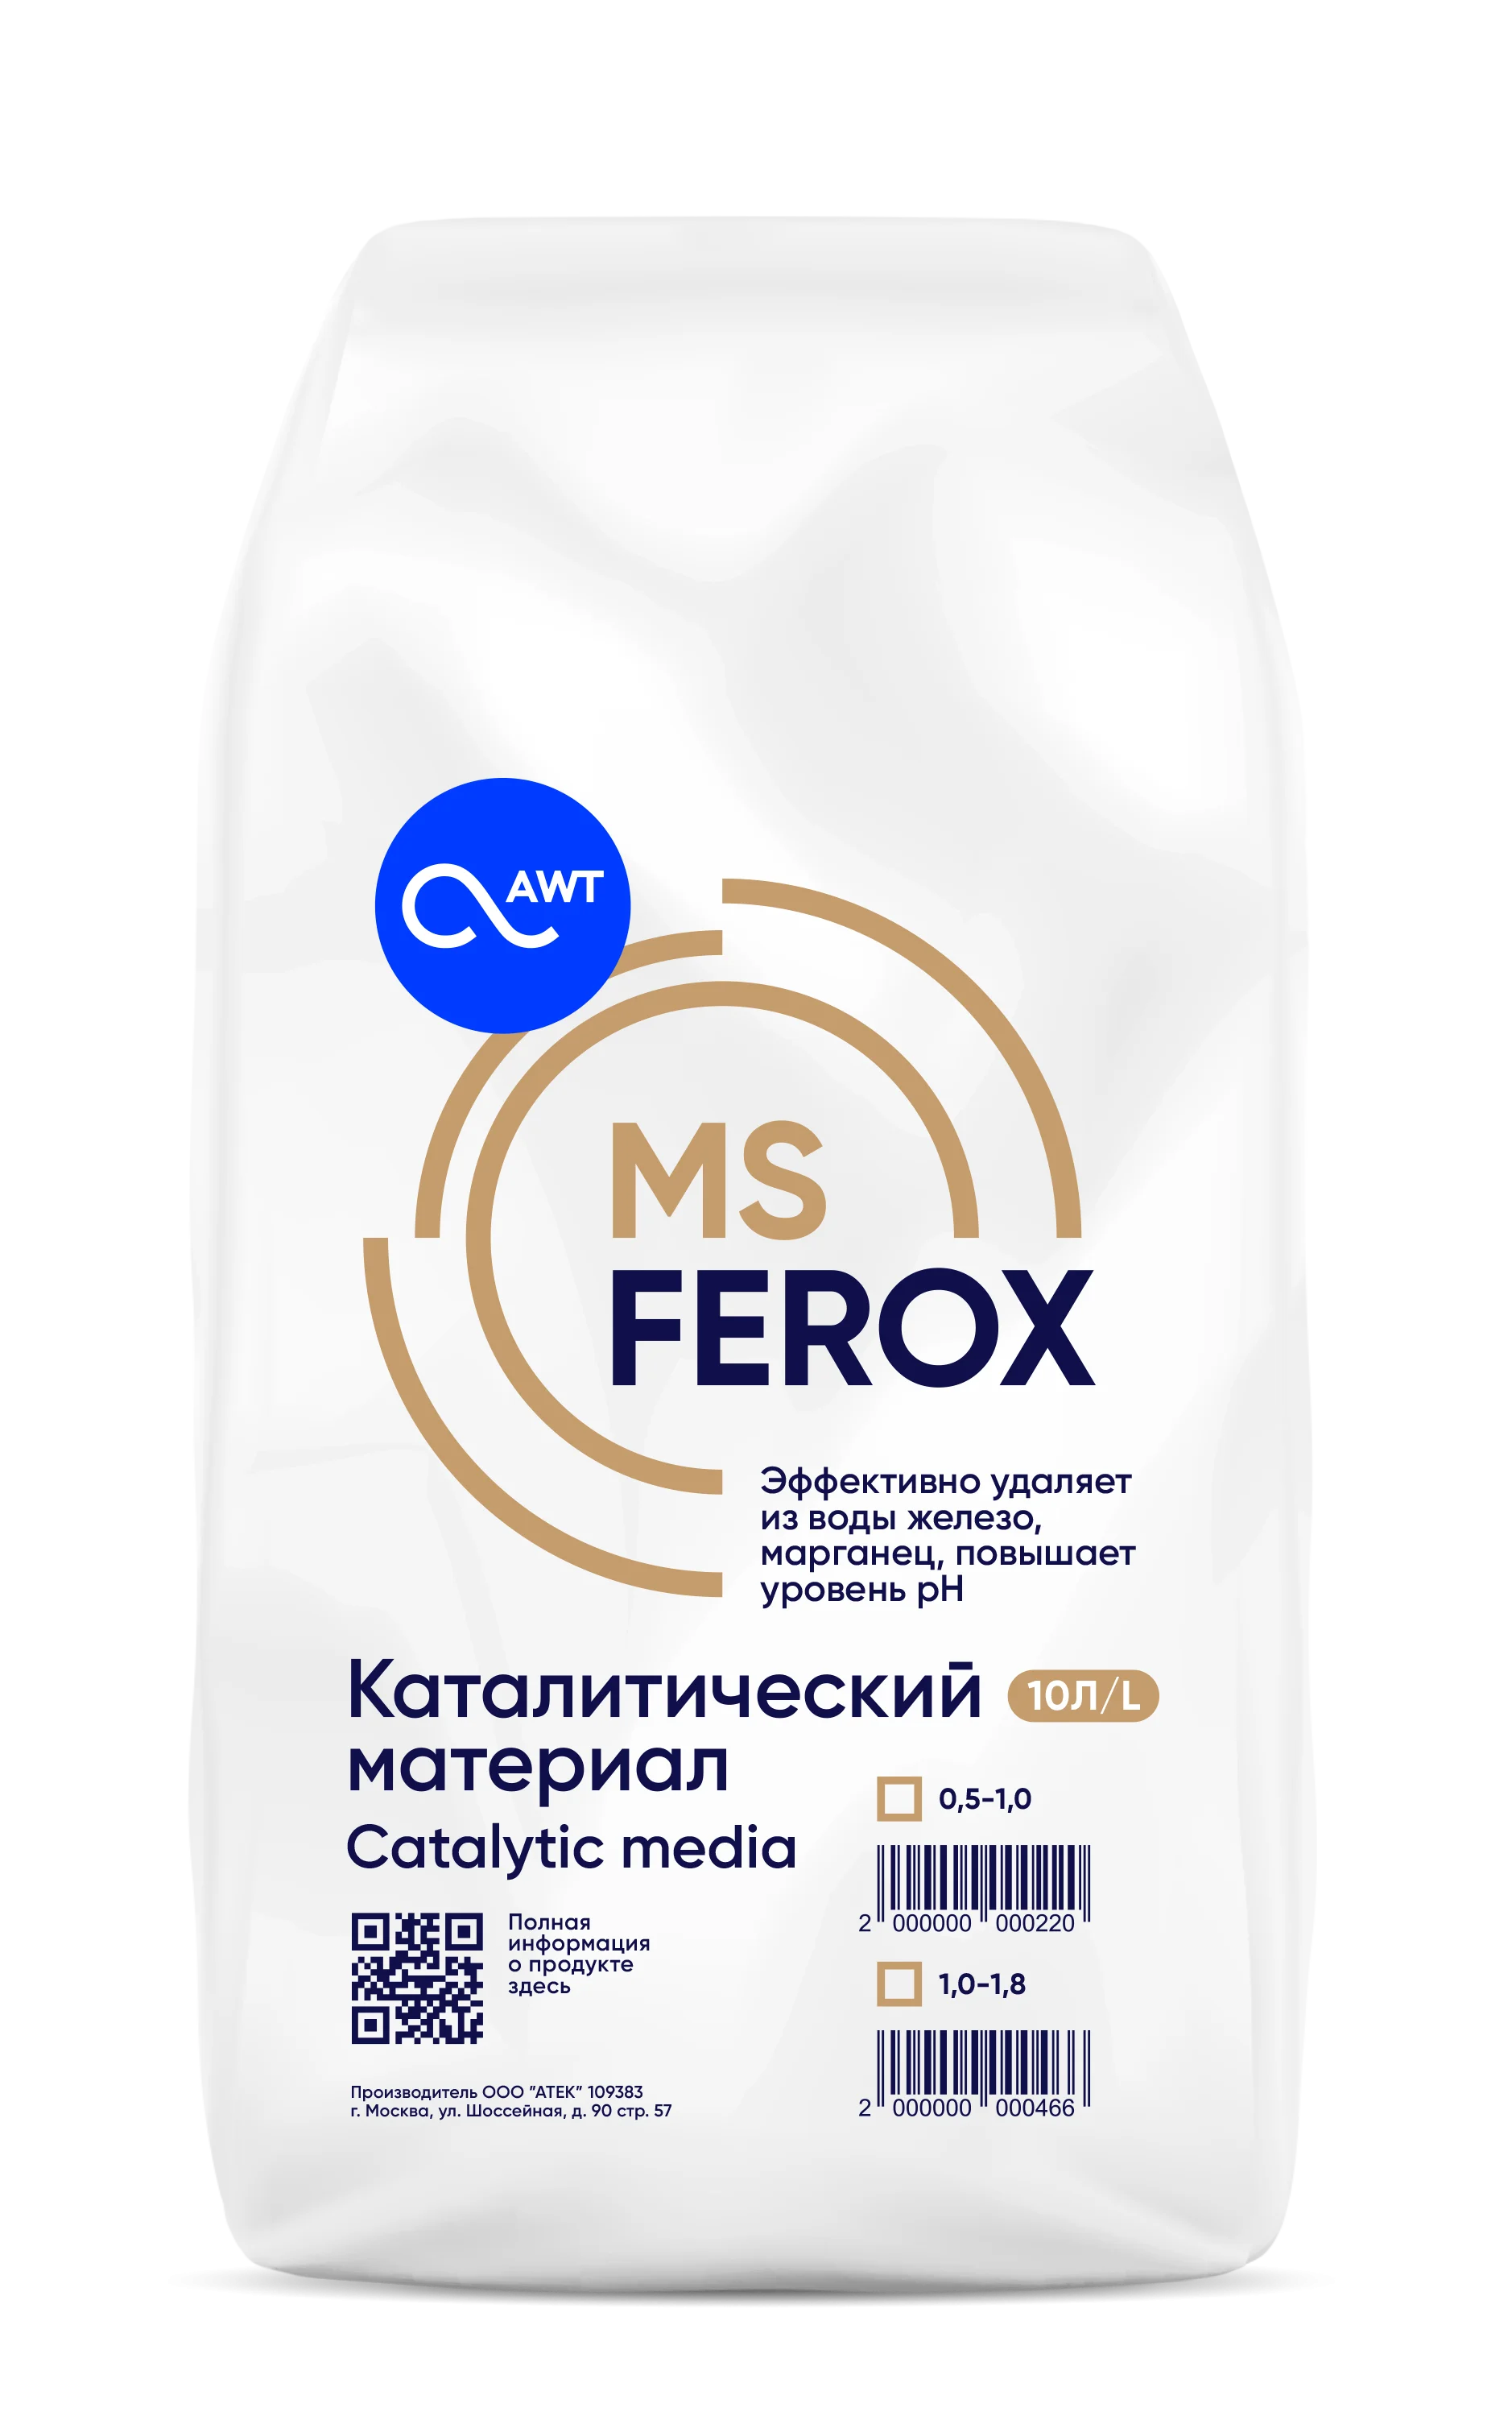 MSFerox (МС Ферокс)